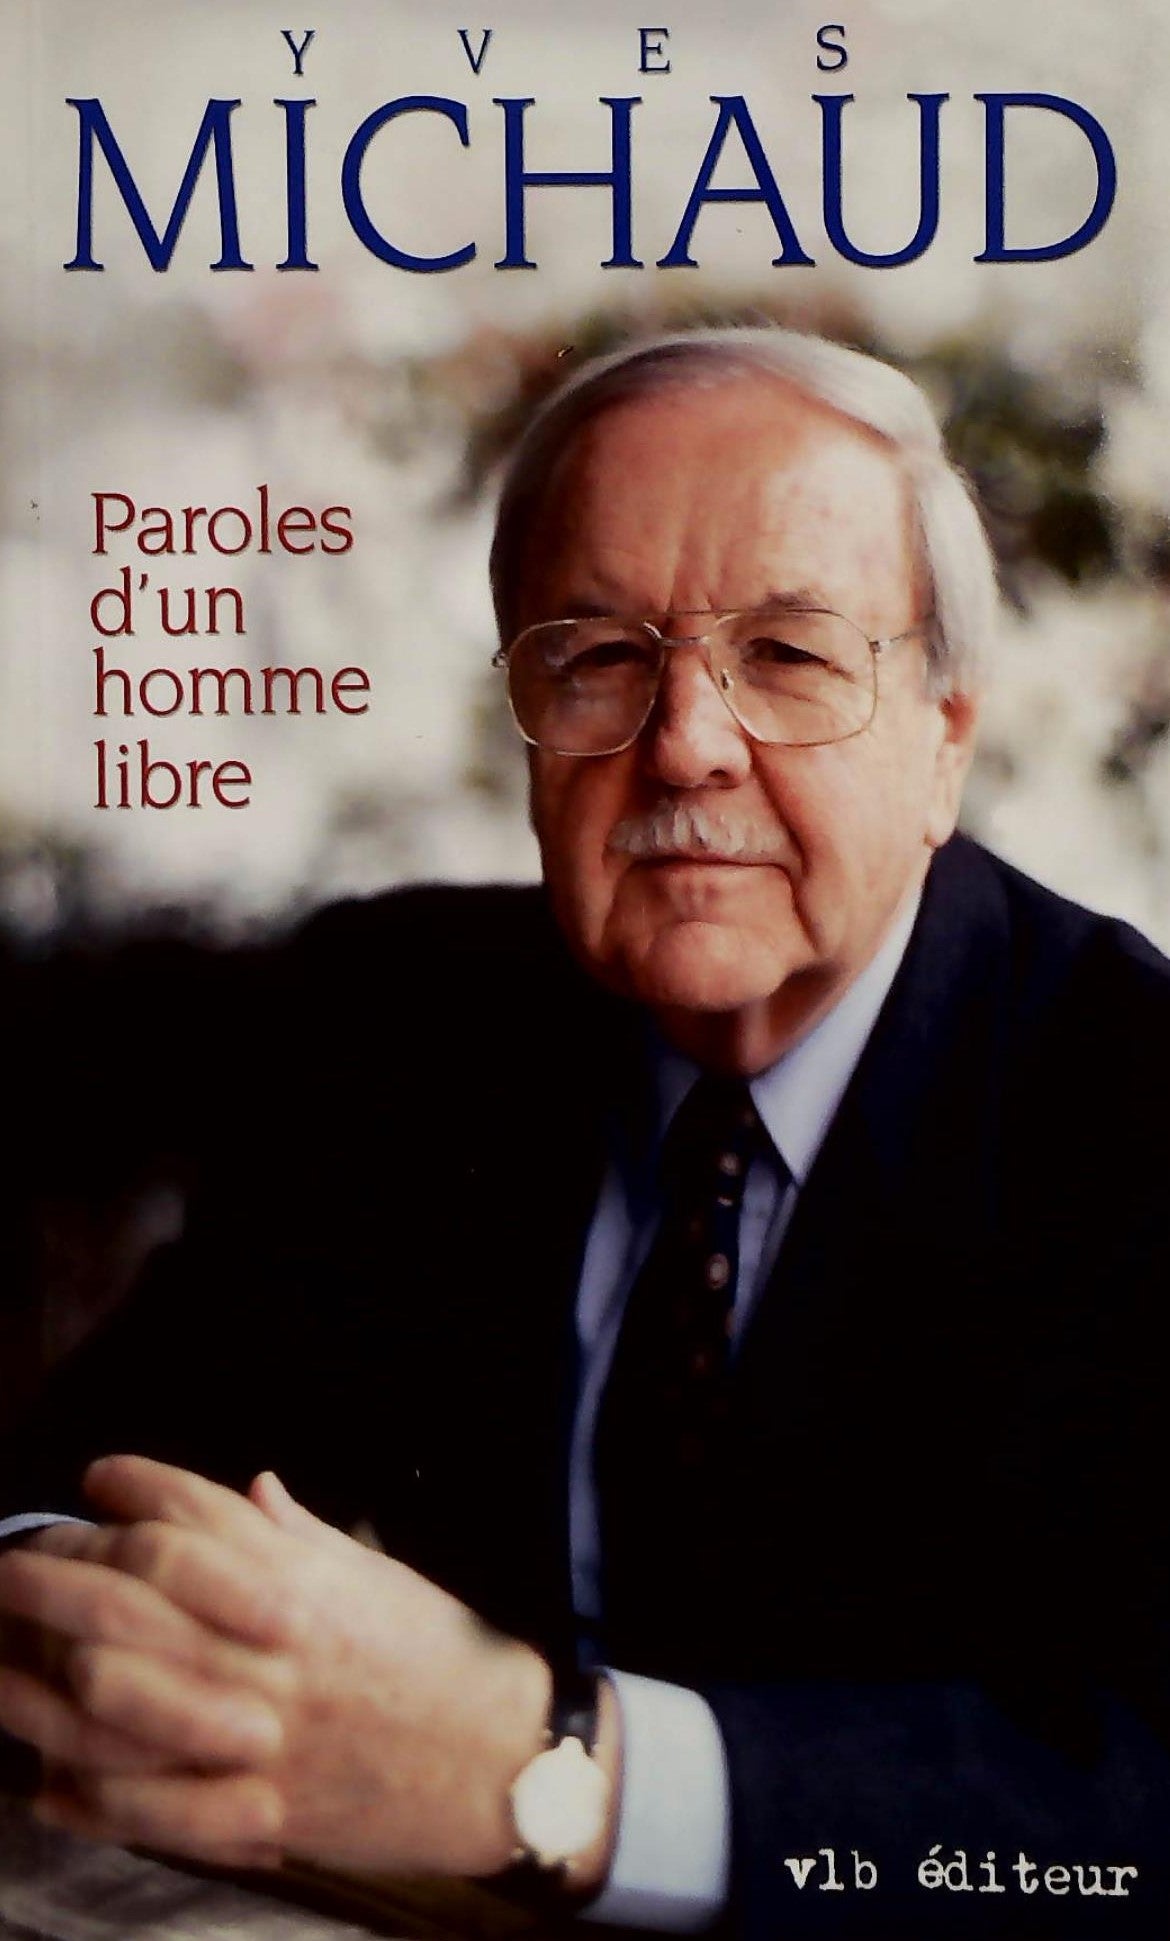 Livre ISBN 2890057739 Partis pris actuels # 24 : Paroles d'un homme libre : chronique des années 1995-2000 (Yves Michaud)